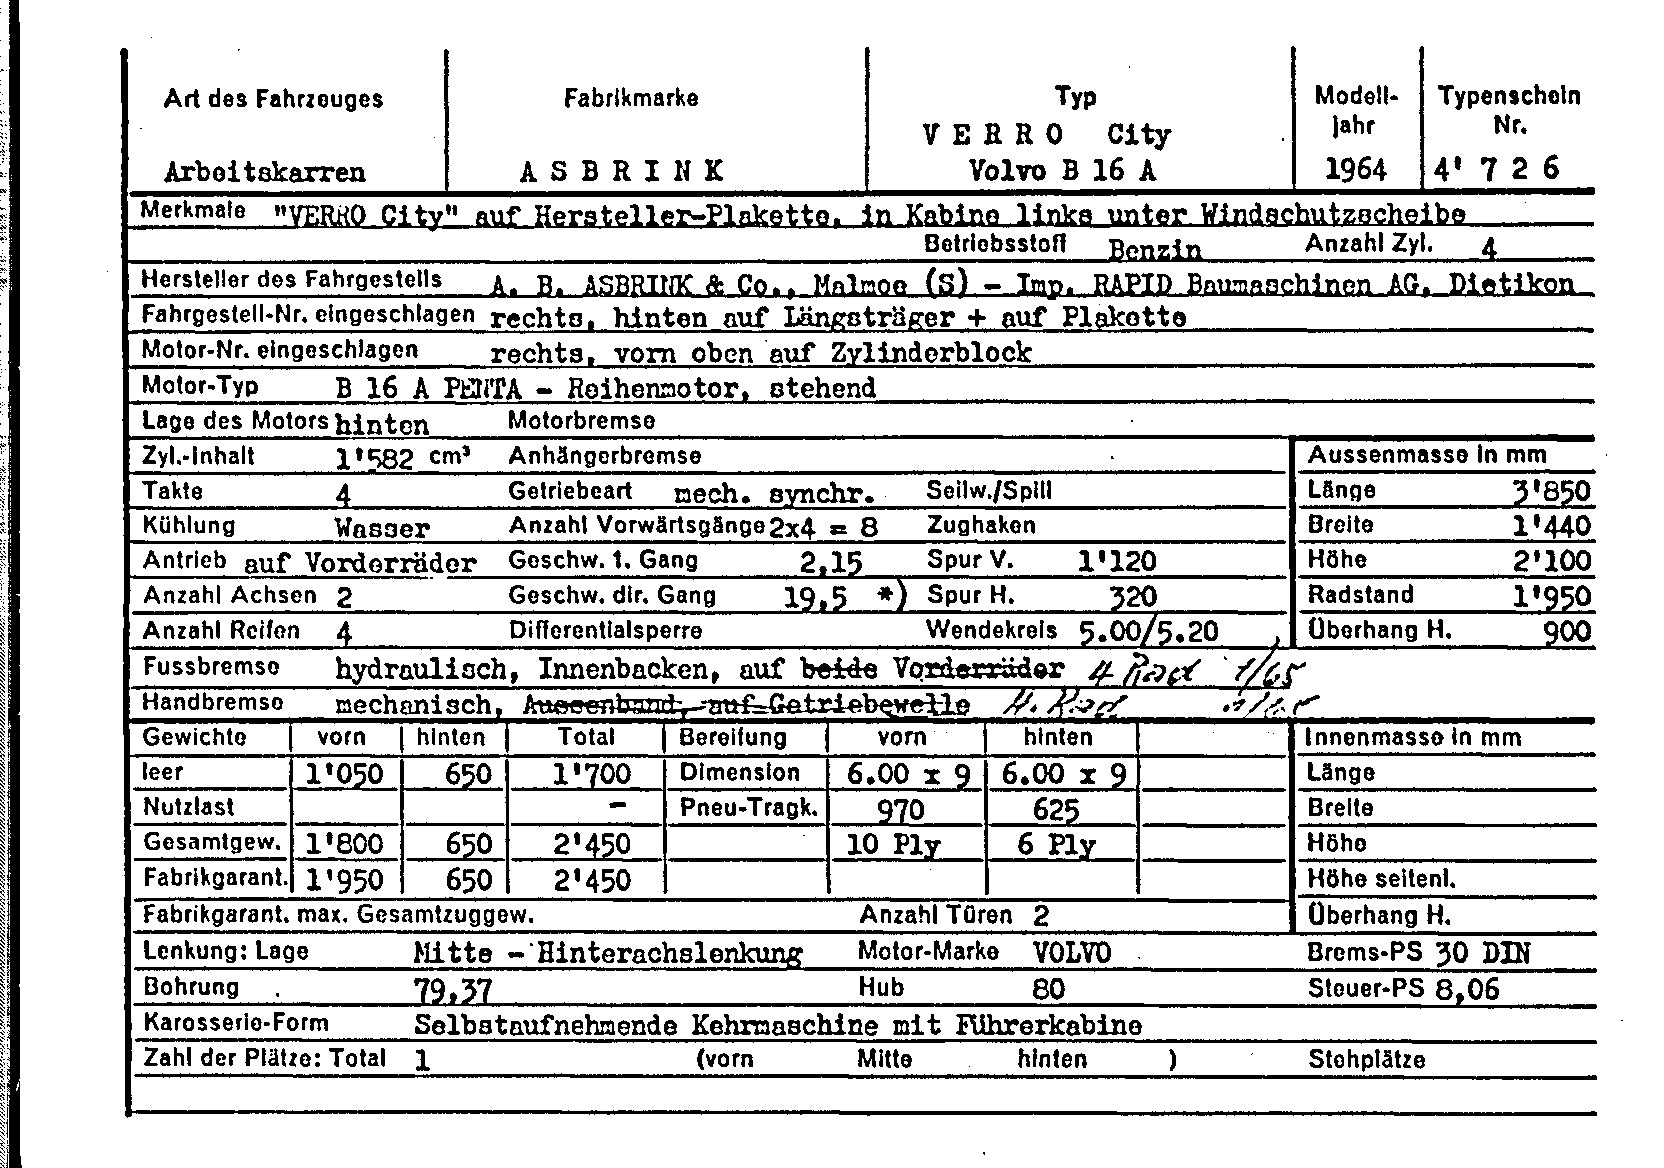 Swiss Certificate of Conformity 4726 German Page 1 (TG.DE.4726.1.png)